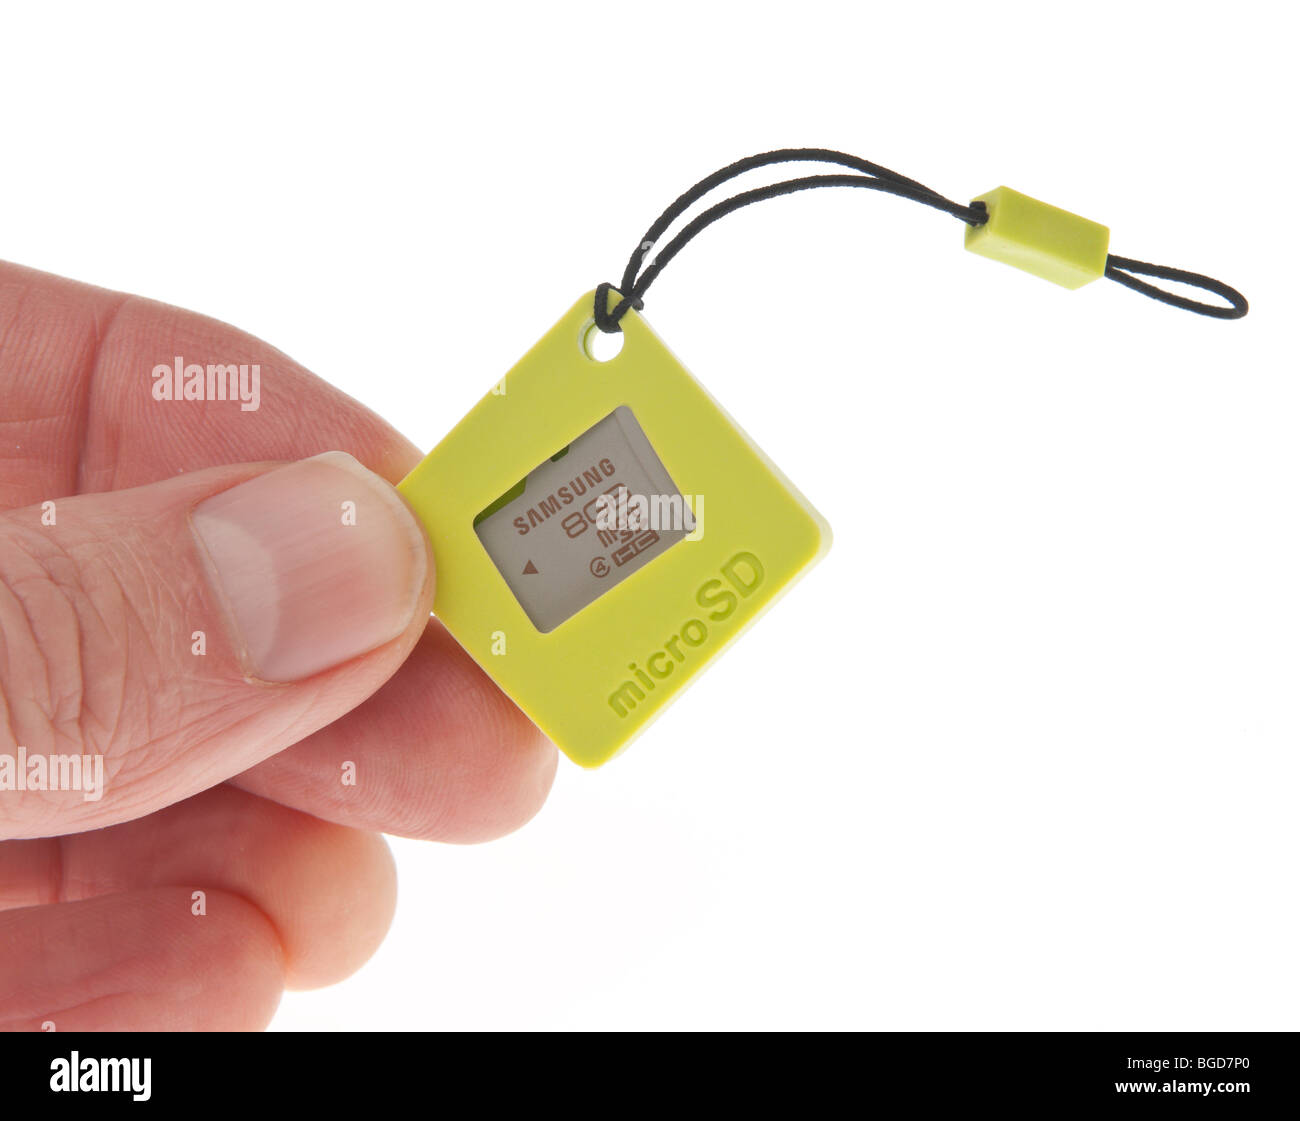 Samsung di qualità premium memoria flash con custodia protettiva per il trasporto - Piccola scheda MicroSD 8 GB detenute da mano maschio Foto Stock